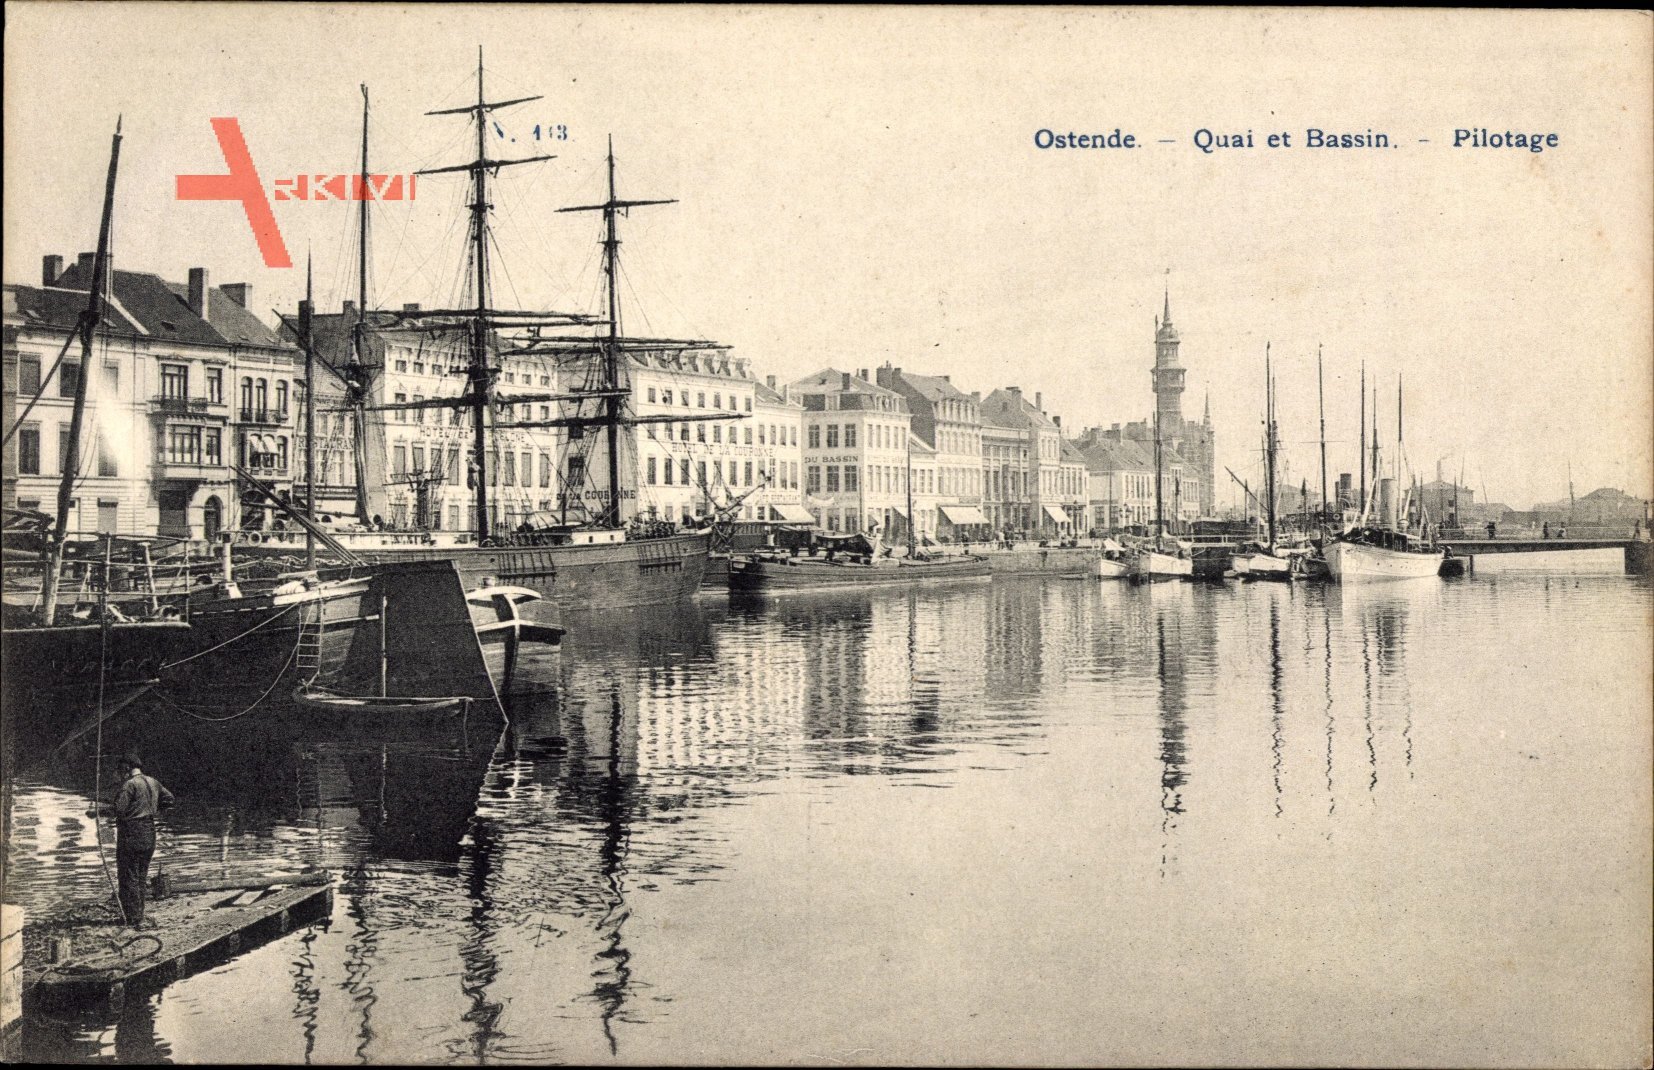 Ostende Westflandern, Quai et Bassin, Pilotage, Segelschiffe im Hafen